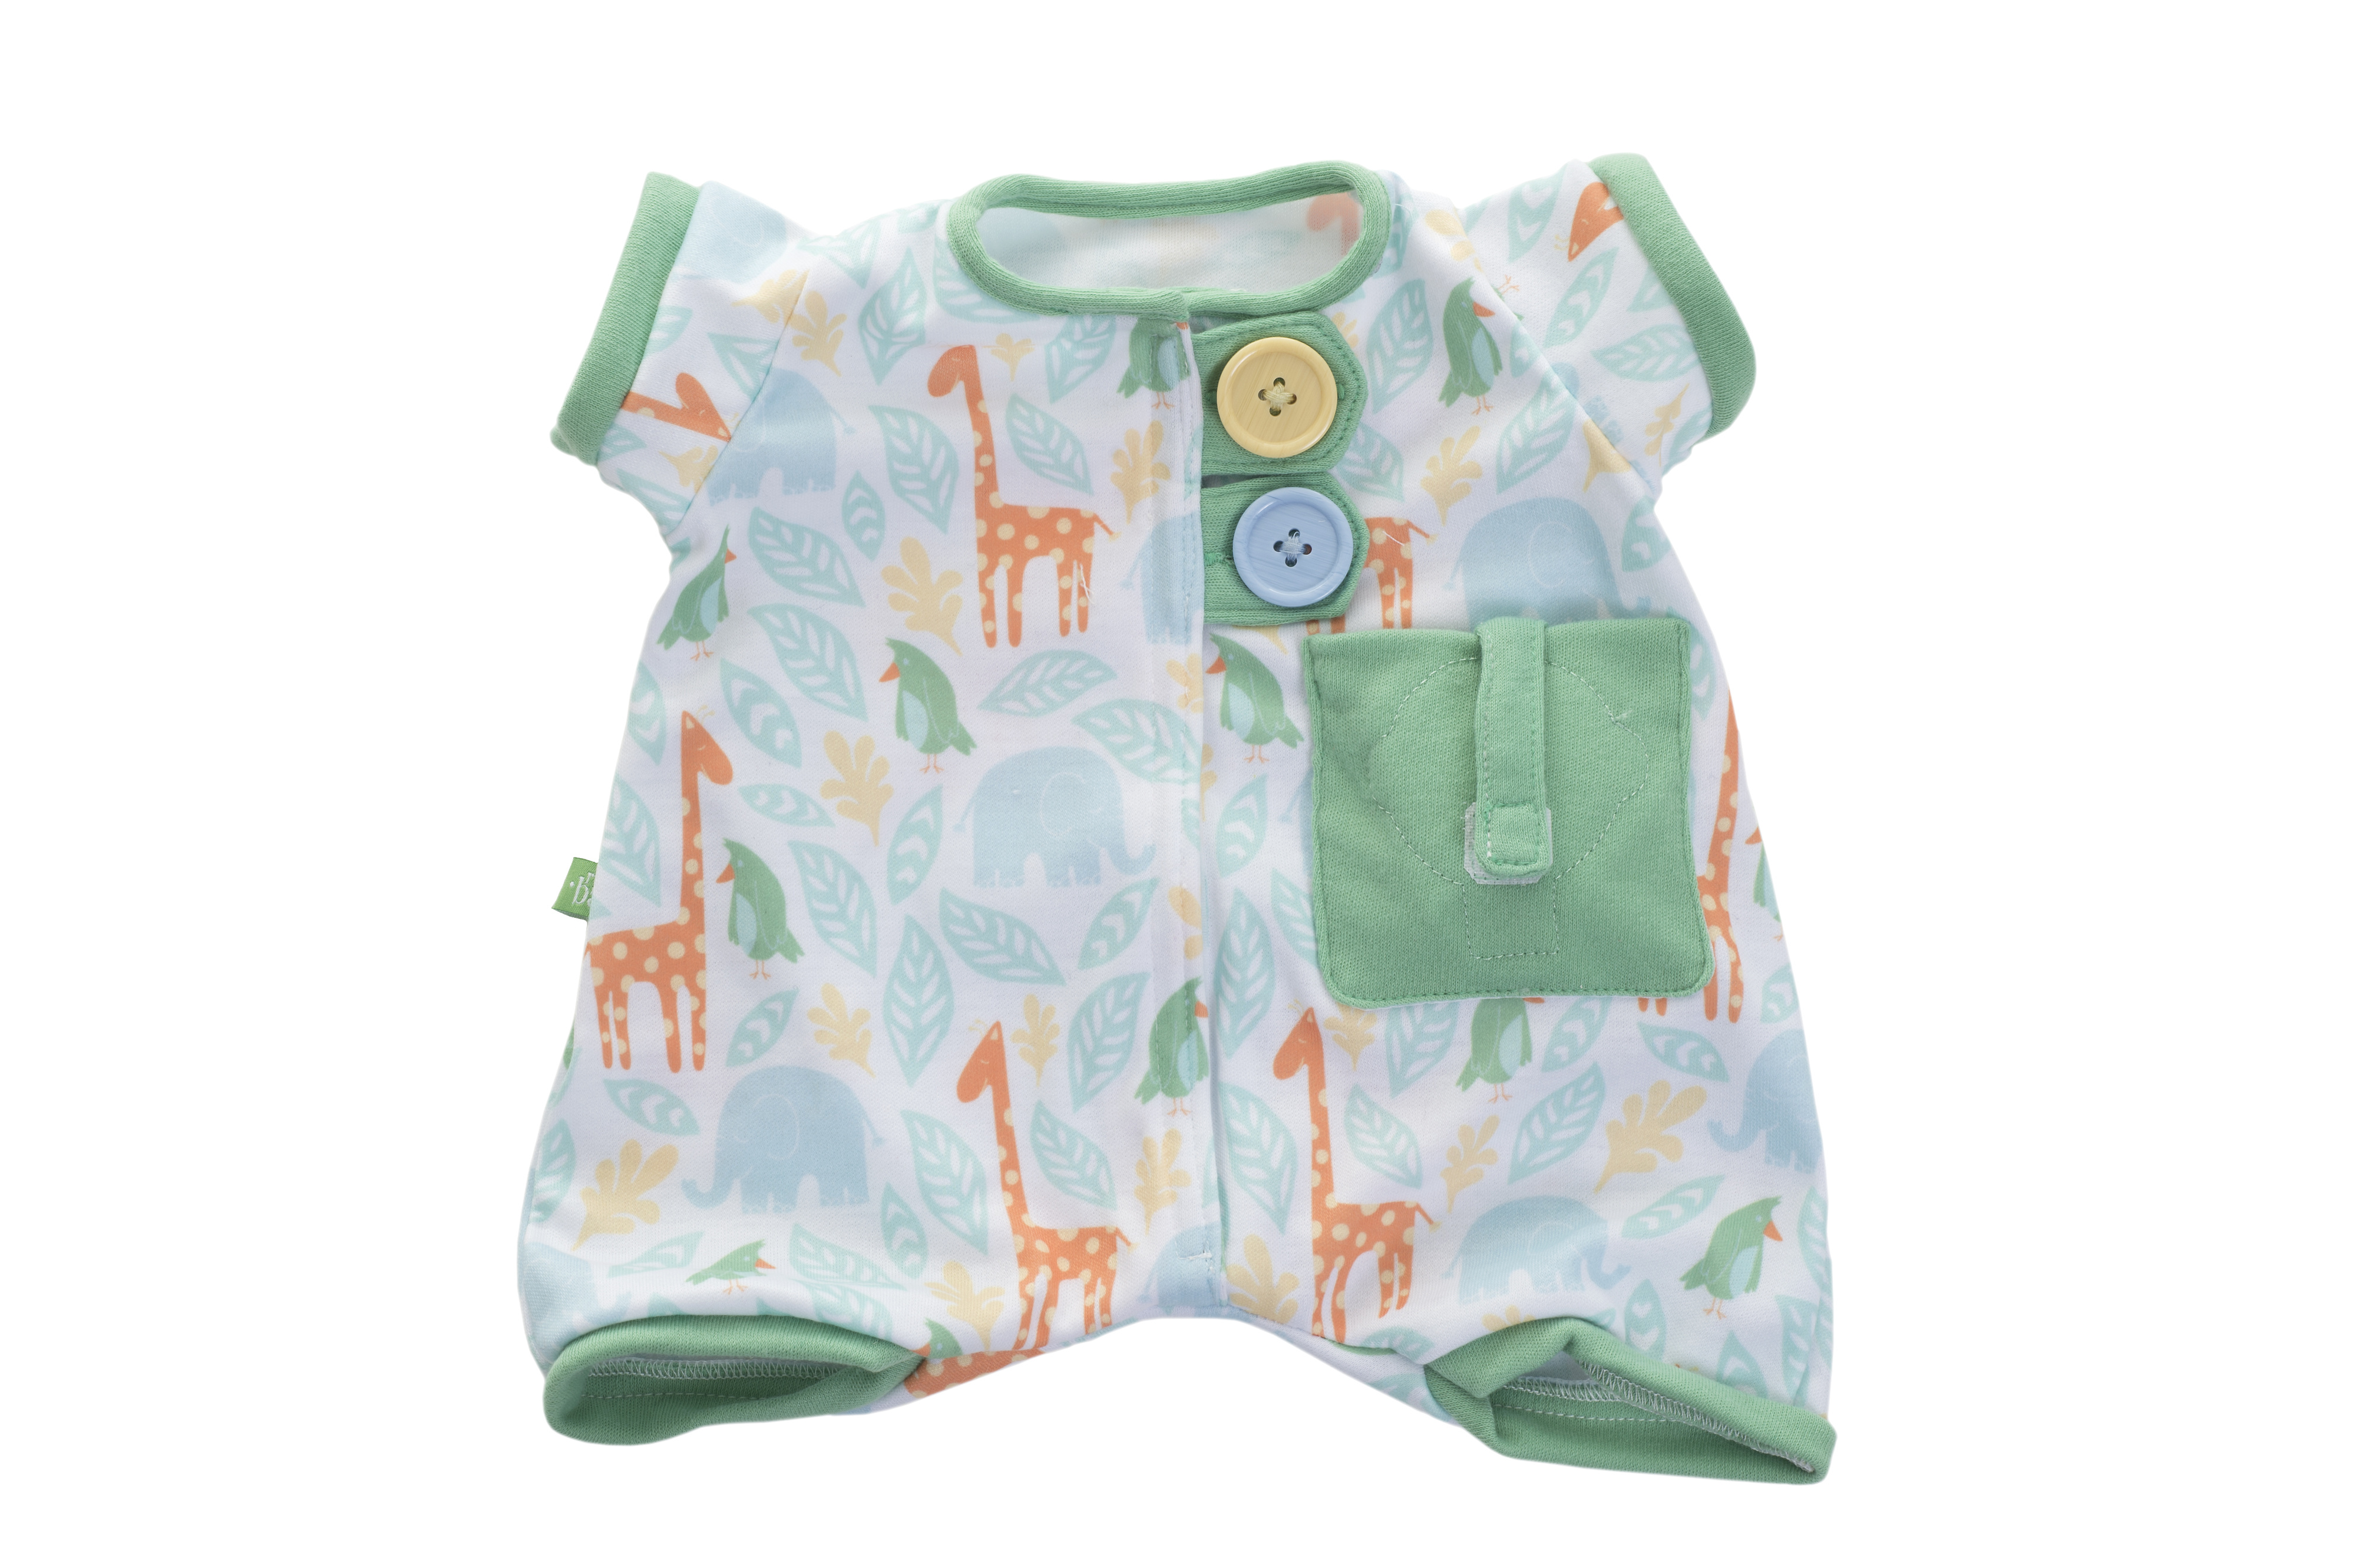 Nuken vaatteet rubens barn nukenvaatteet vihreä green pajamas baby